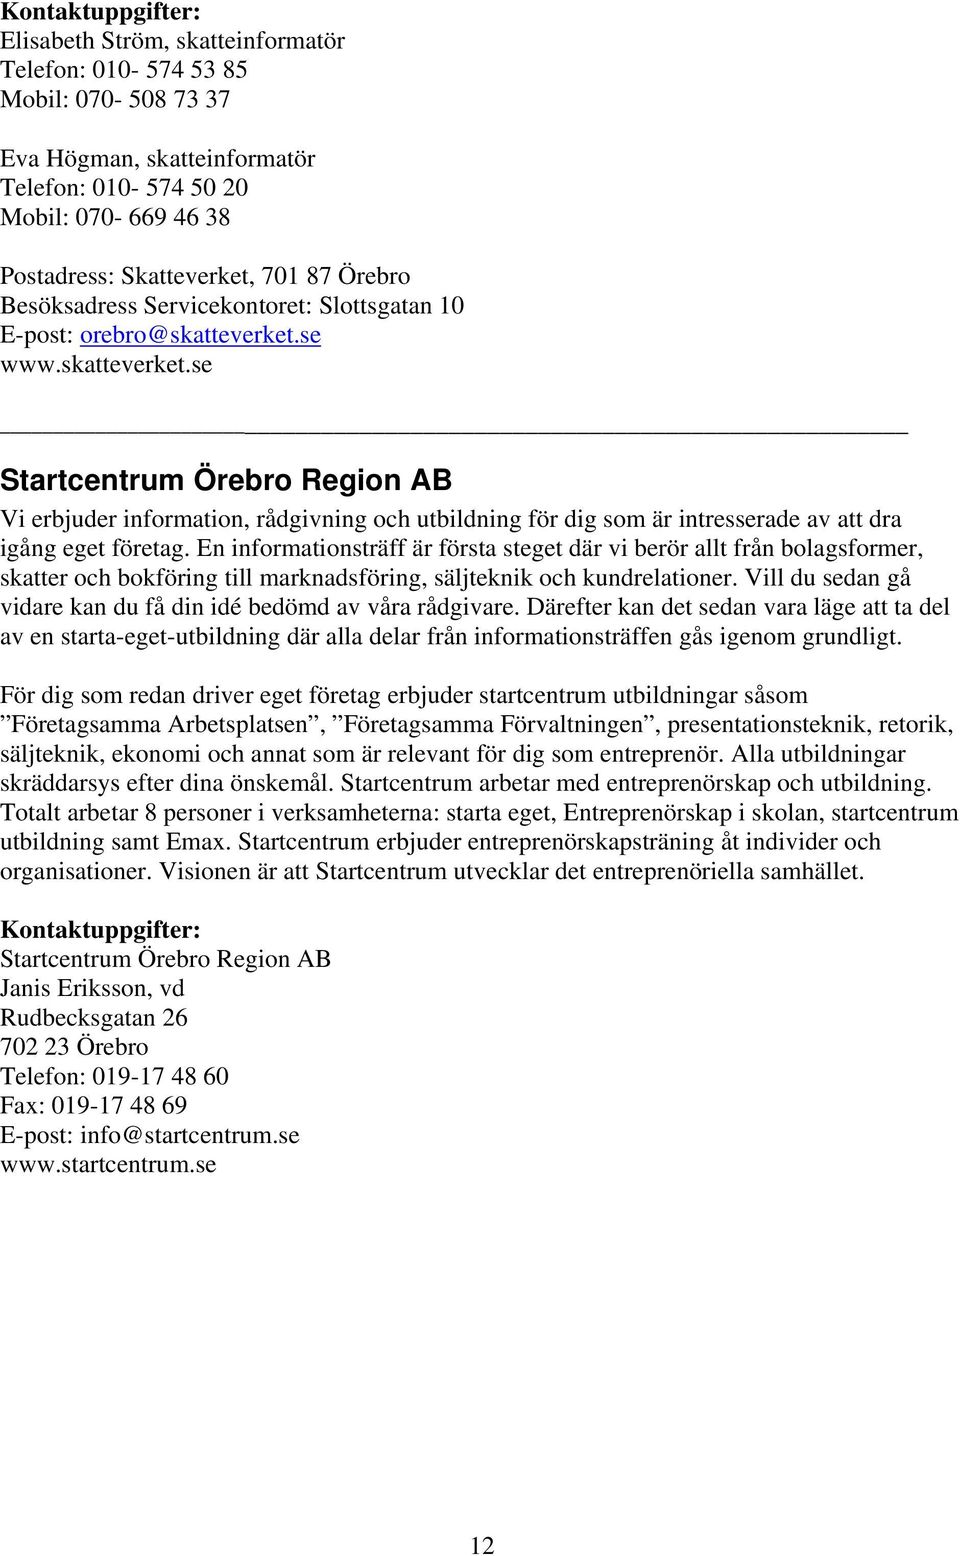 se www.skatteverket.se Startcentrum Örebro Region AB Vi erbjuder information, rådgivning och utbildning för dig som är intresserade av att dra igång eget företag.